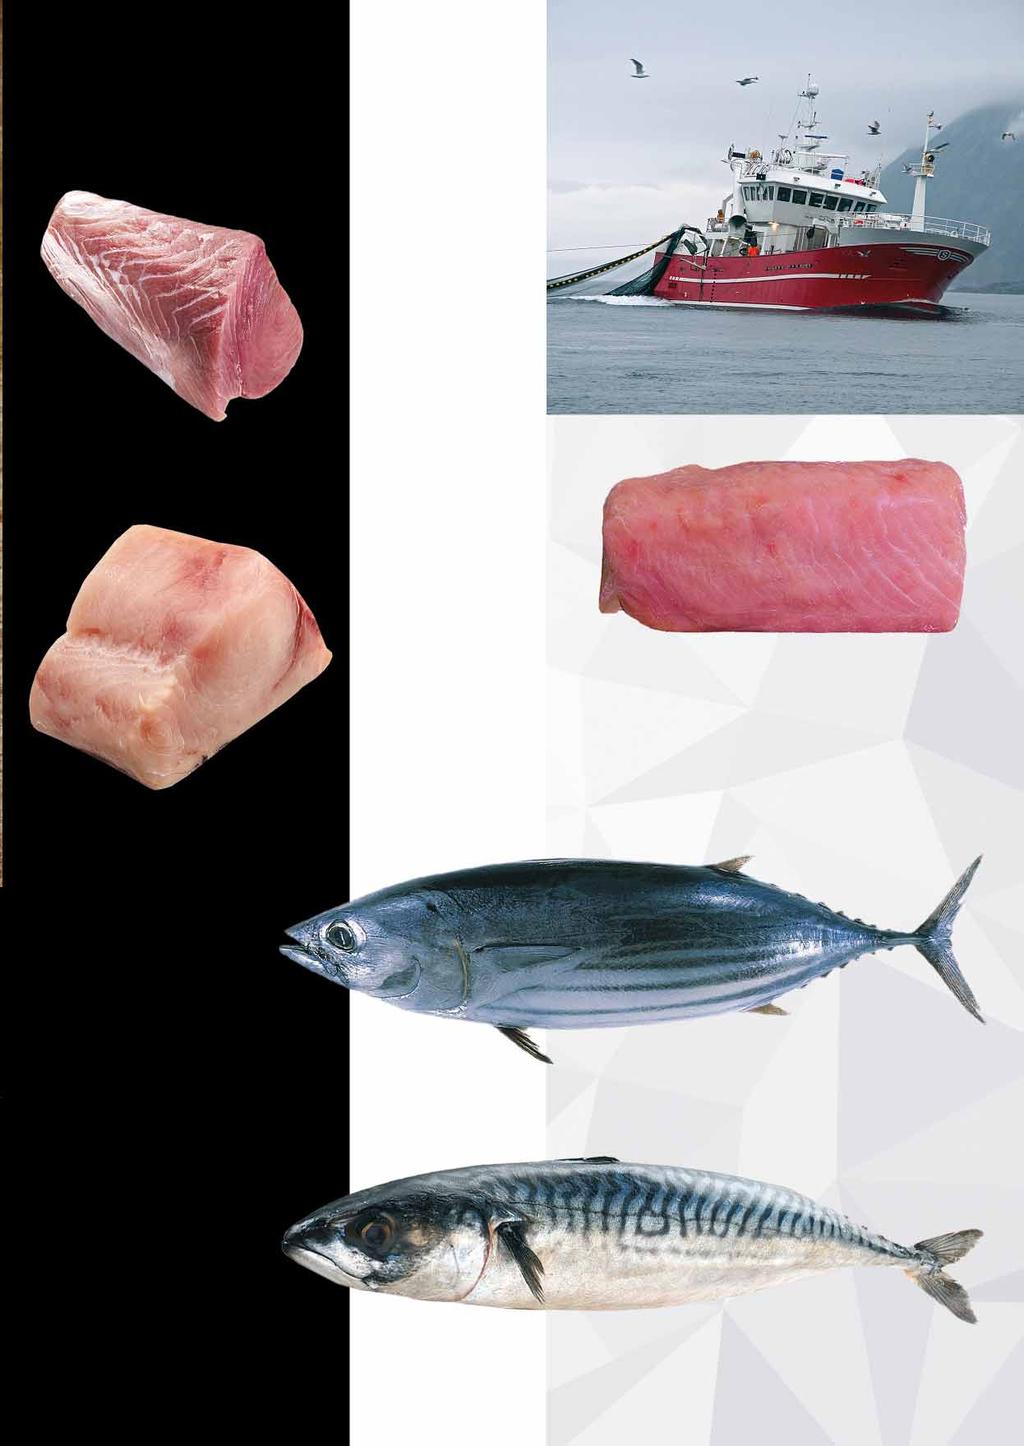 TUŃCZYK POLĘDWICA w ofercie również tuńczyk polędwica sashimi obszary połowu 34, 51, 57 41007923 7331 MIECZNIK KAWAŁKI opakowanie ok.